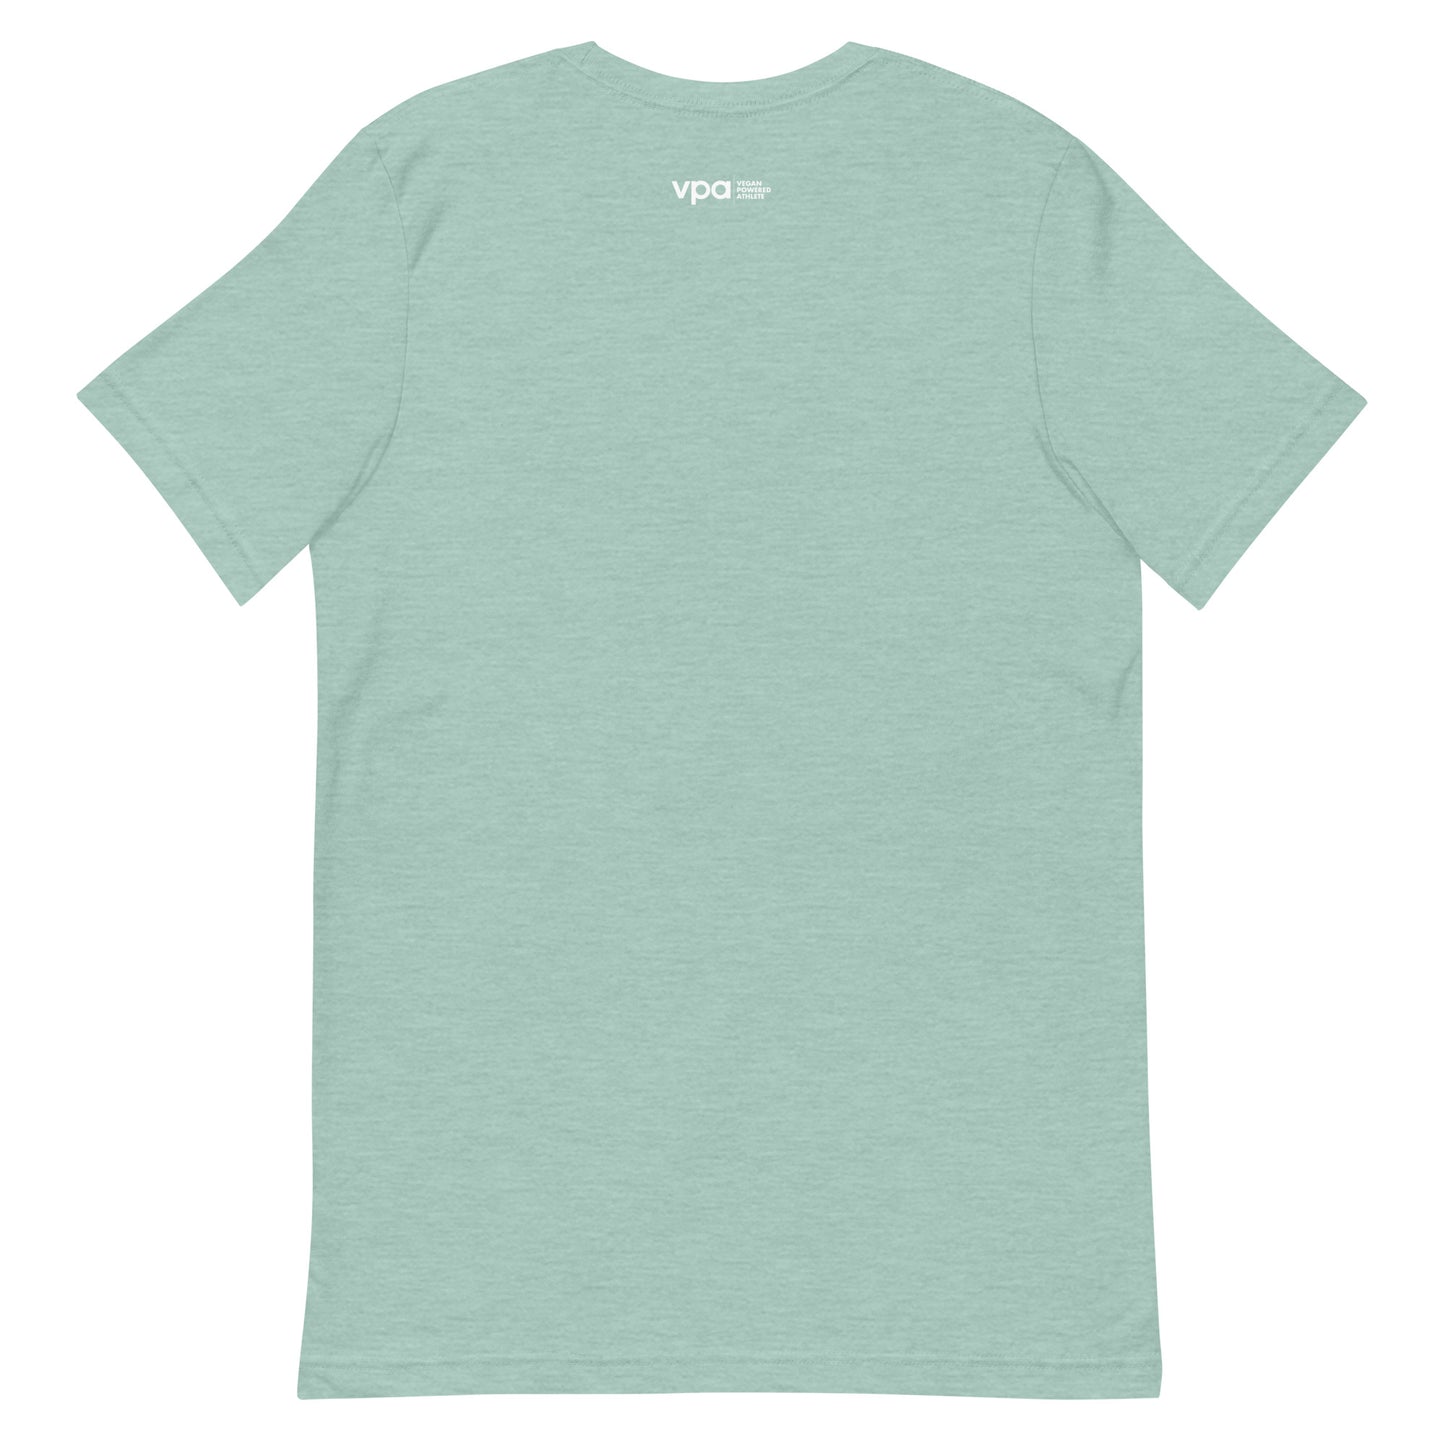 Veg*an Unisex t-shirt